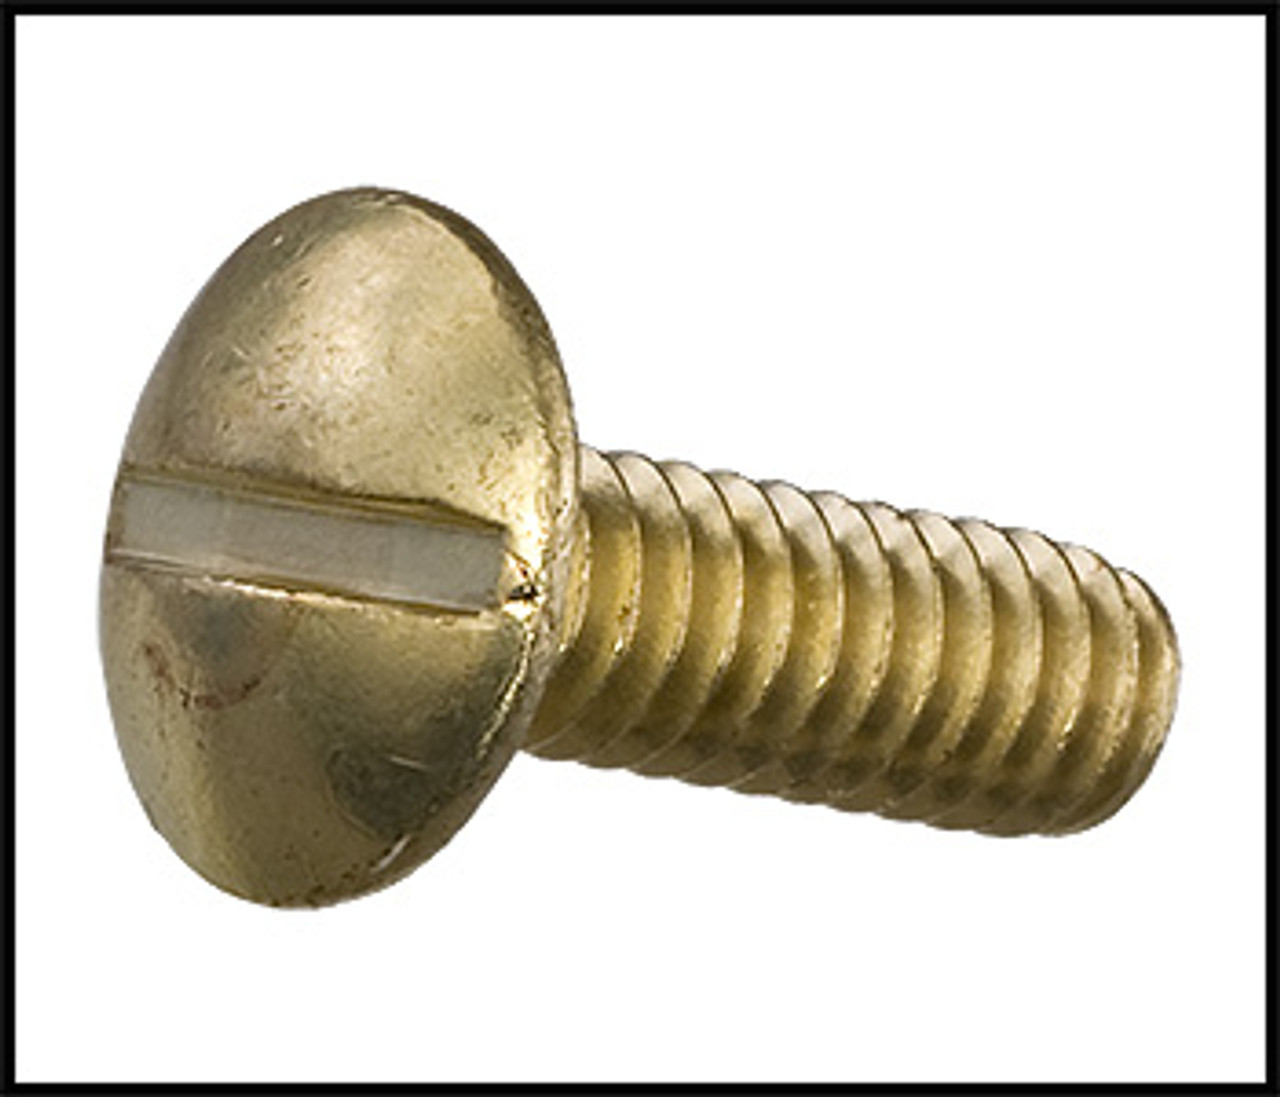 Sta-Rite 1/4" Impeller Lock Screw For Max-E-Glas/Dura-Glas Pumps (#C30-12)